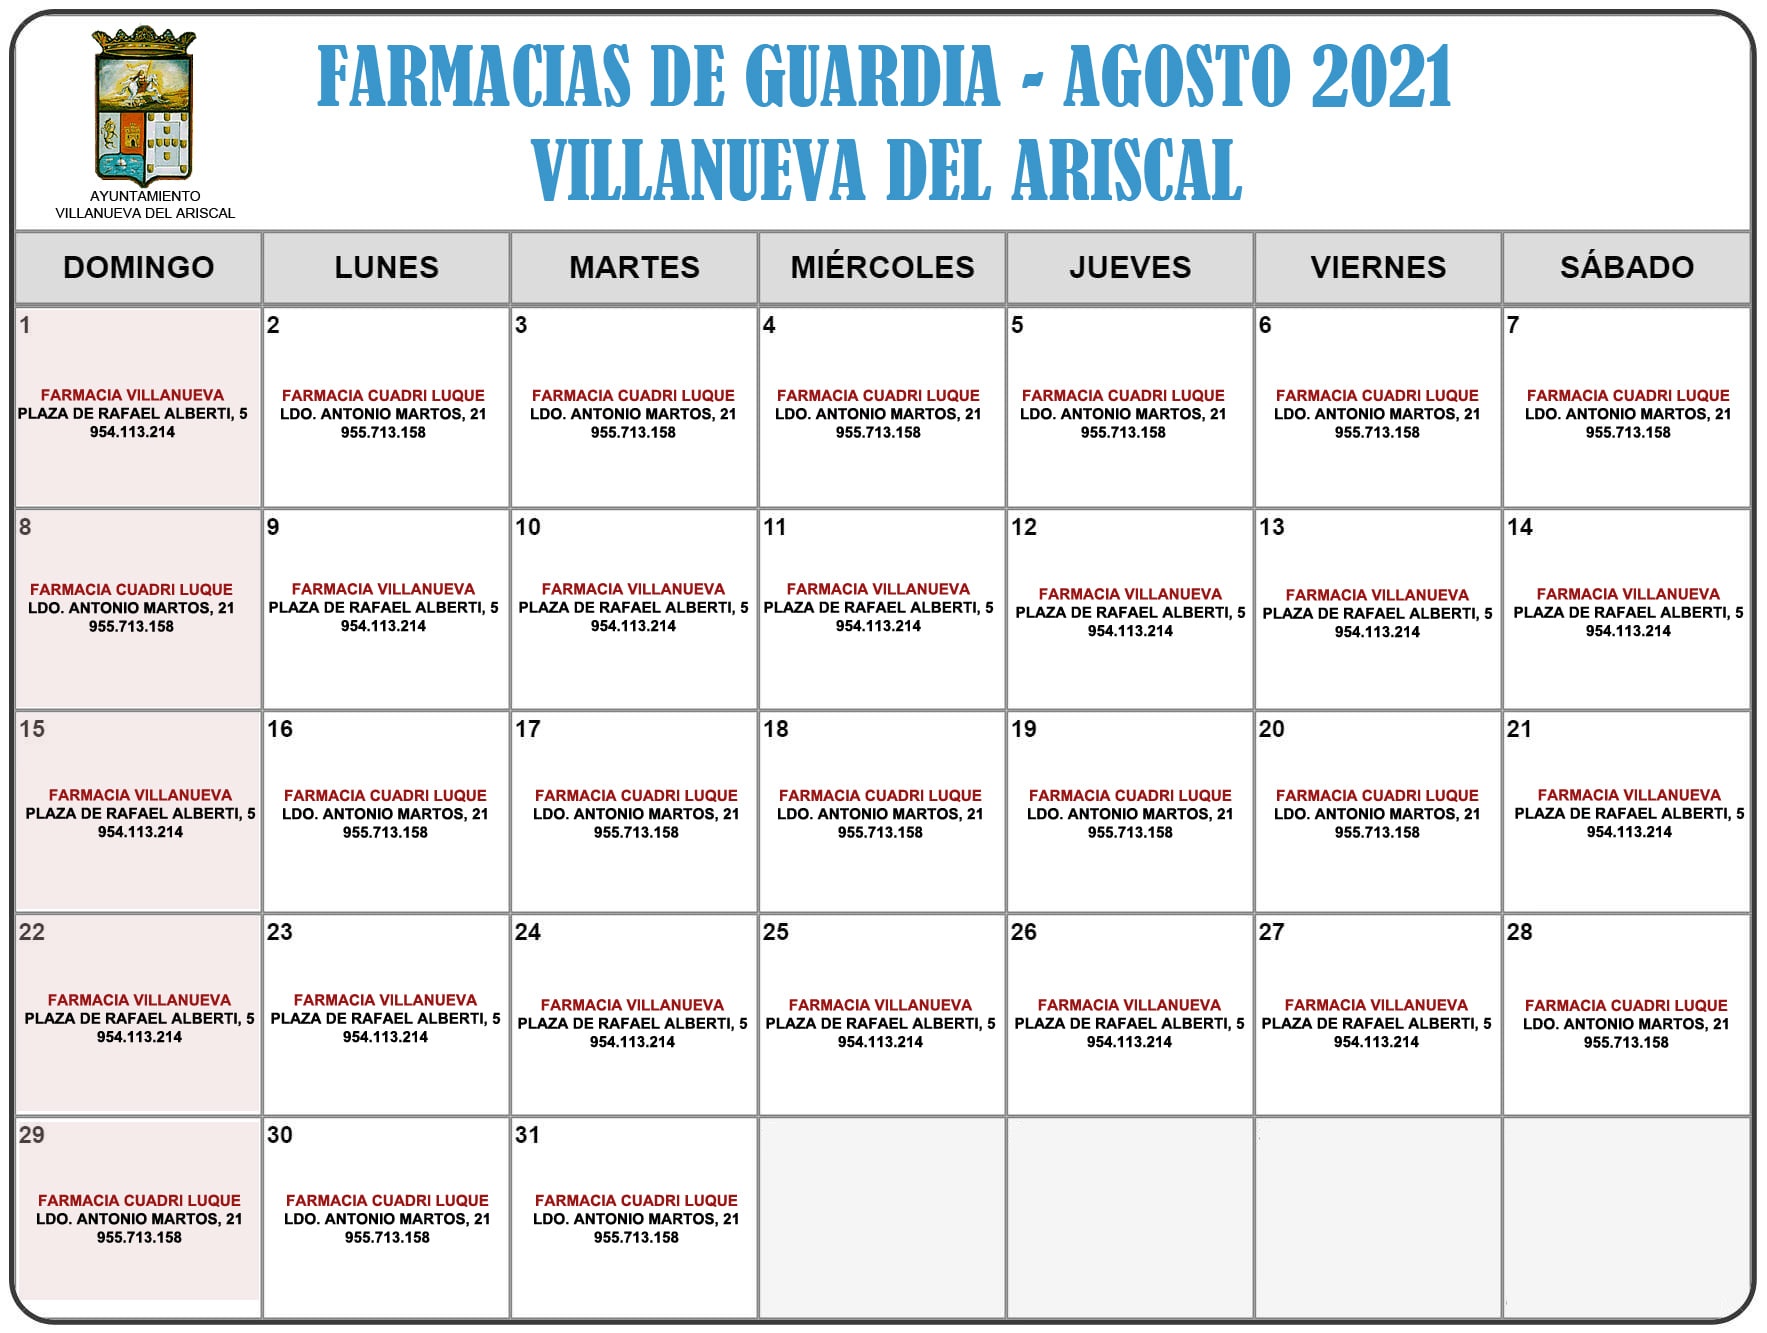 FARMACIAS DE GUARDIA AGOSTO 2021